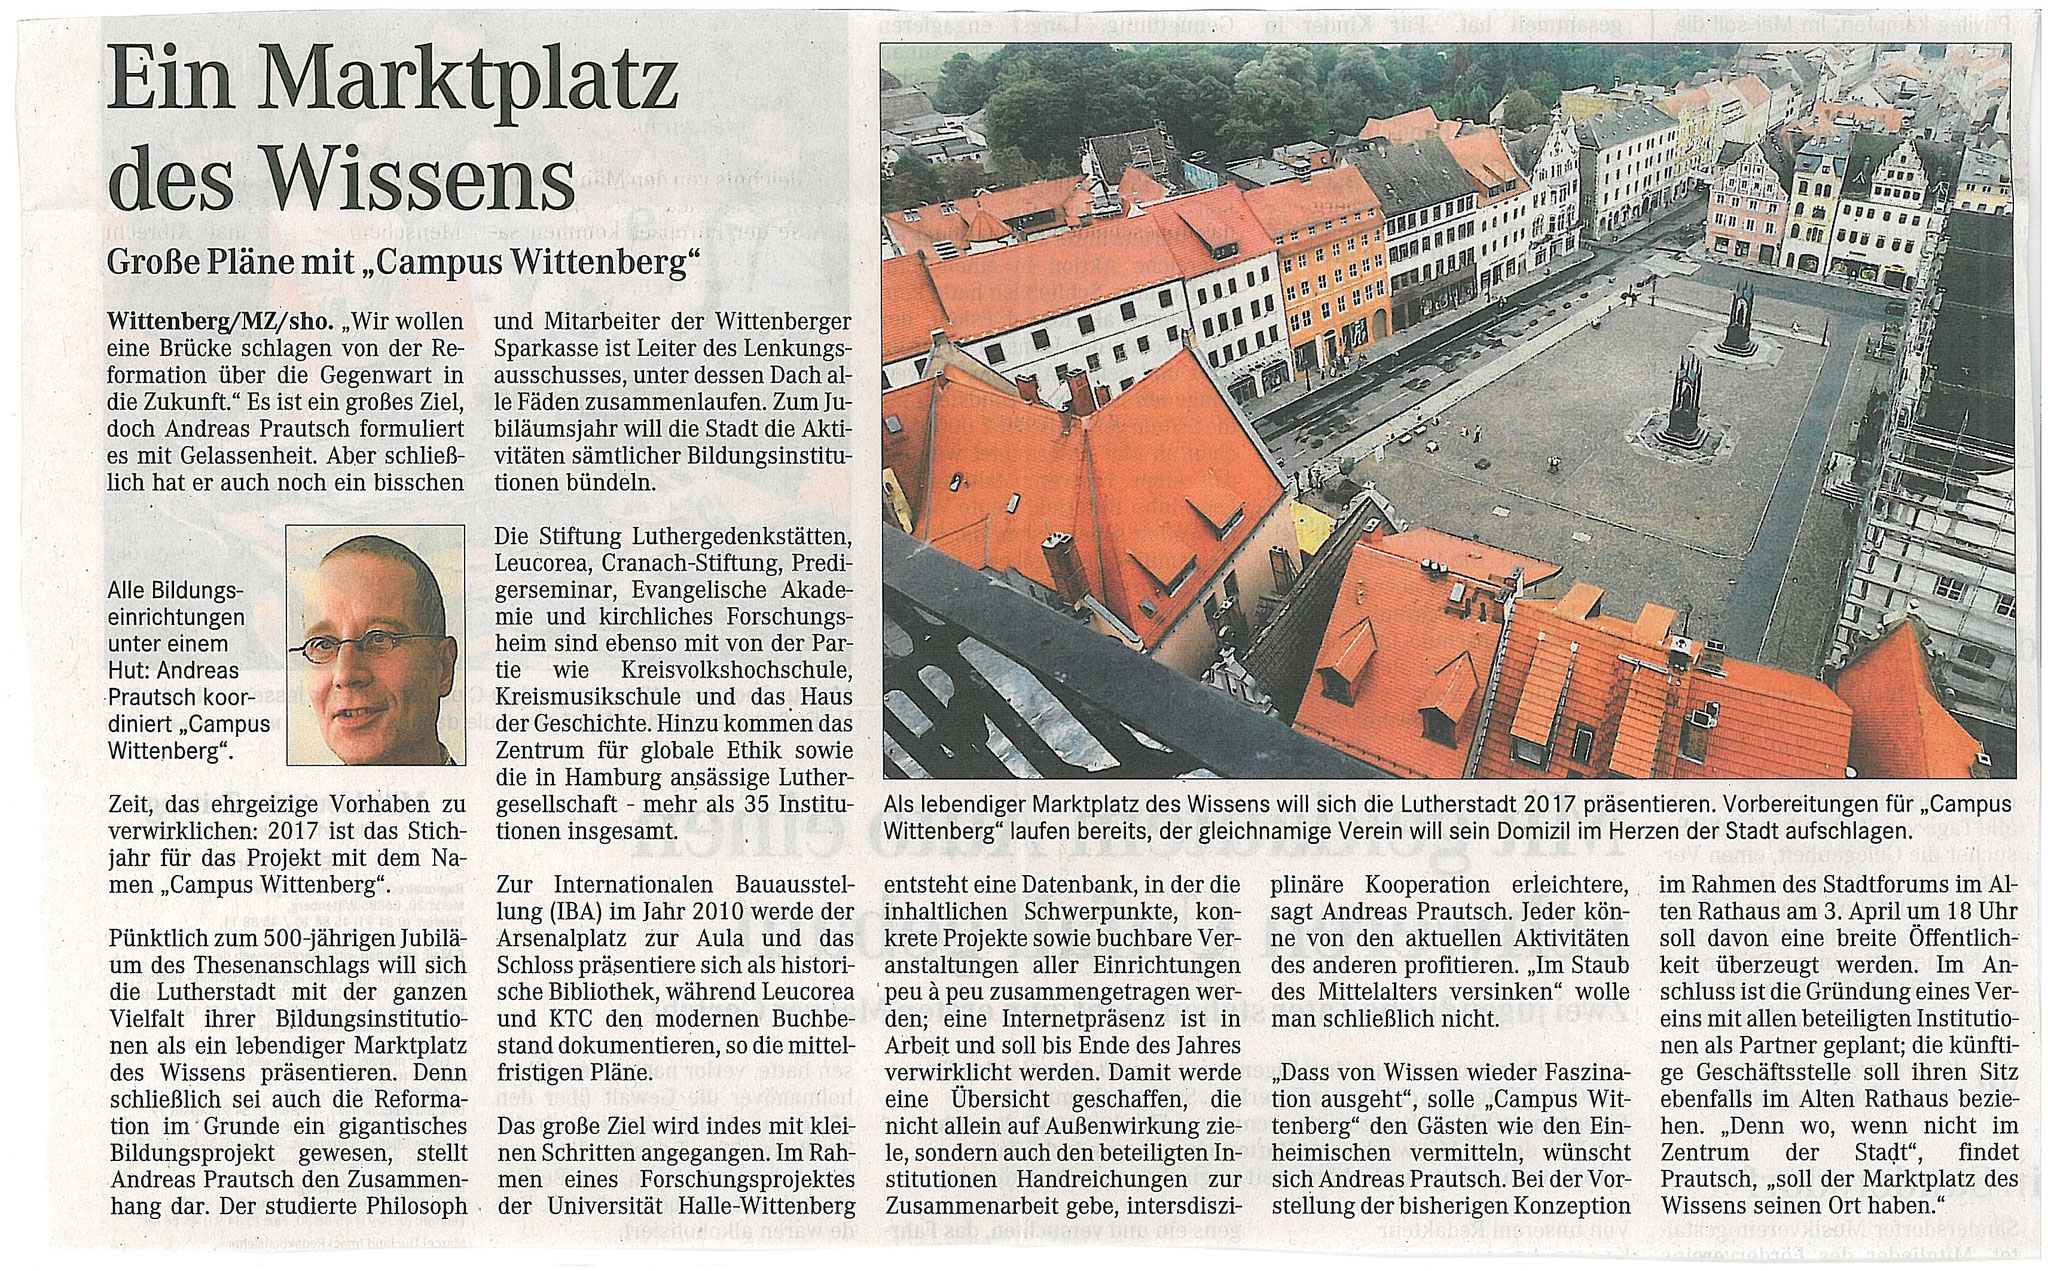 Mitteldeutsche Zeitung ("MZ"): Geschäftsführer CAMPUS  WITTENBERG: Befristete Abordnung zur "IBA 2010" als Wissenschaftssponsoring der Sparkasse  - 2006